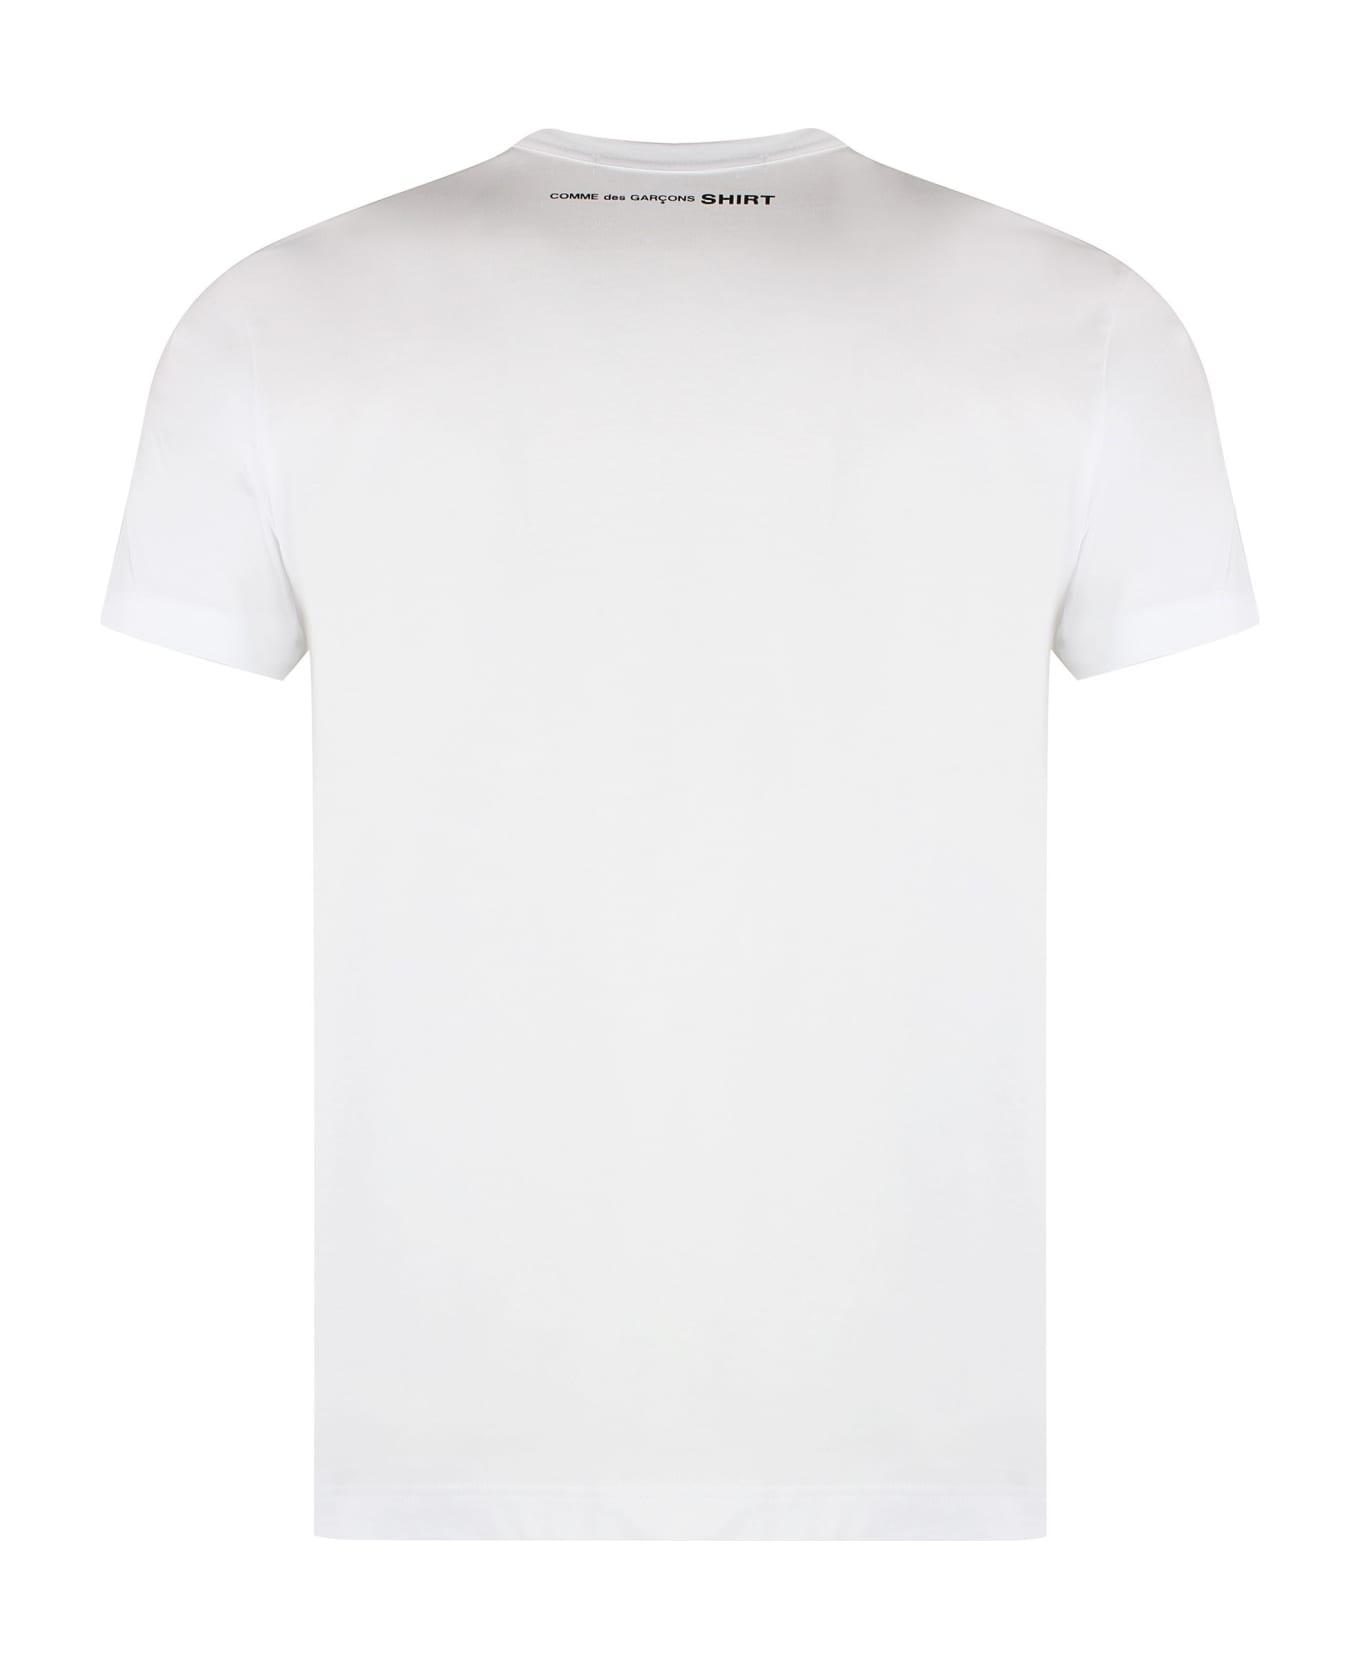 Comme des Garçons Shirt Cotton Crew-neck T-shirt - White シャツ